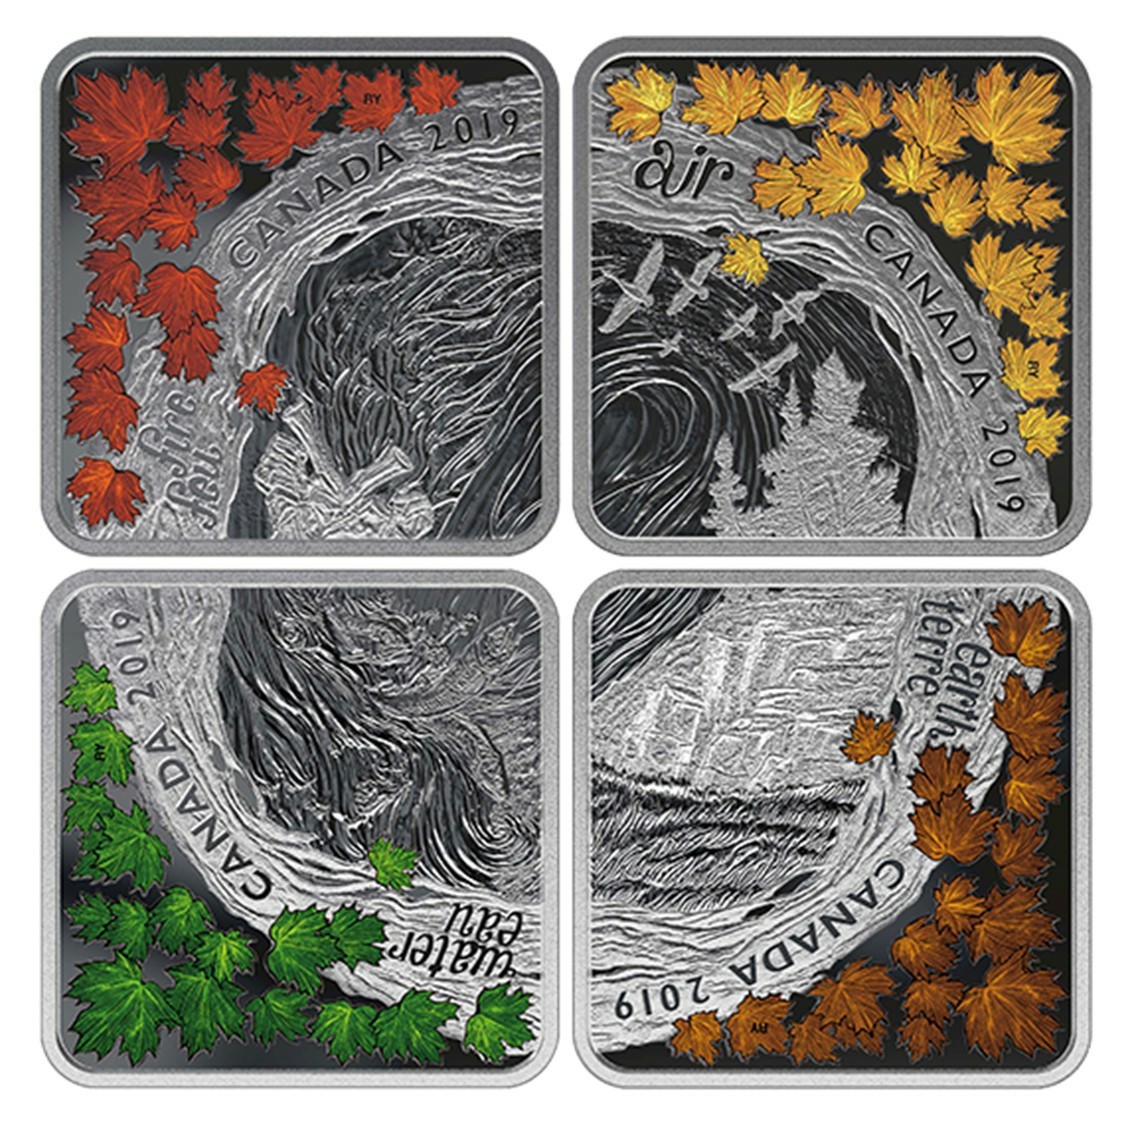 2019 カナダ 自然の４要素 パズル型 3ドル 正方形 プルーフカラー銀貨 4種セット